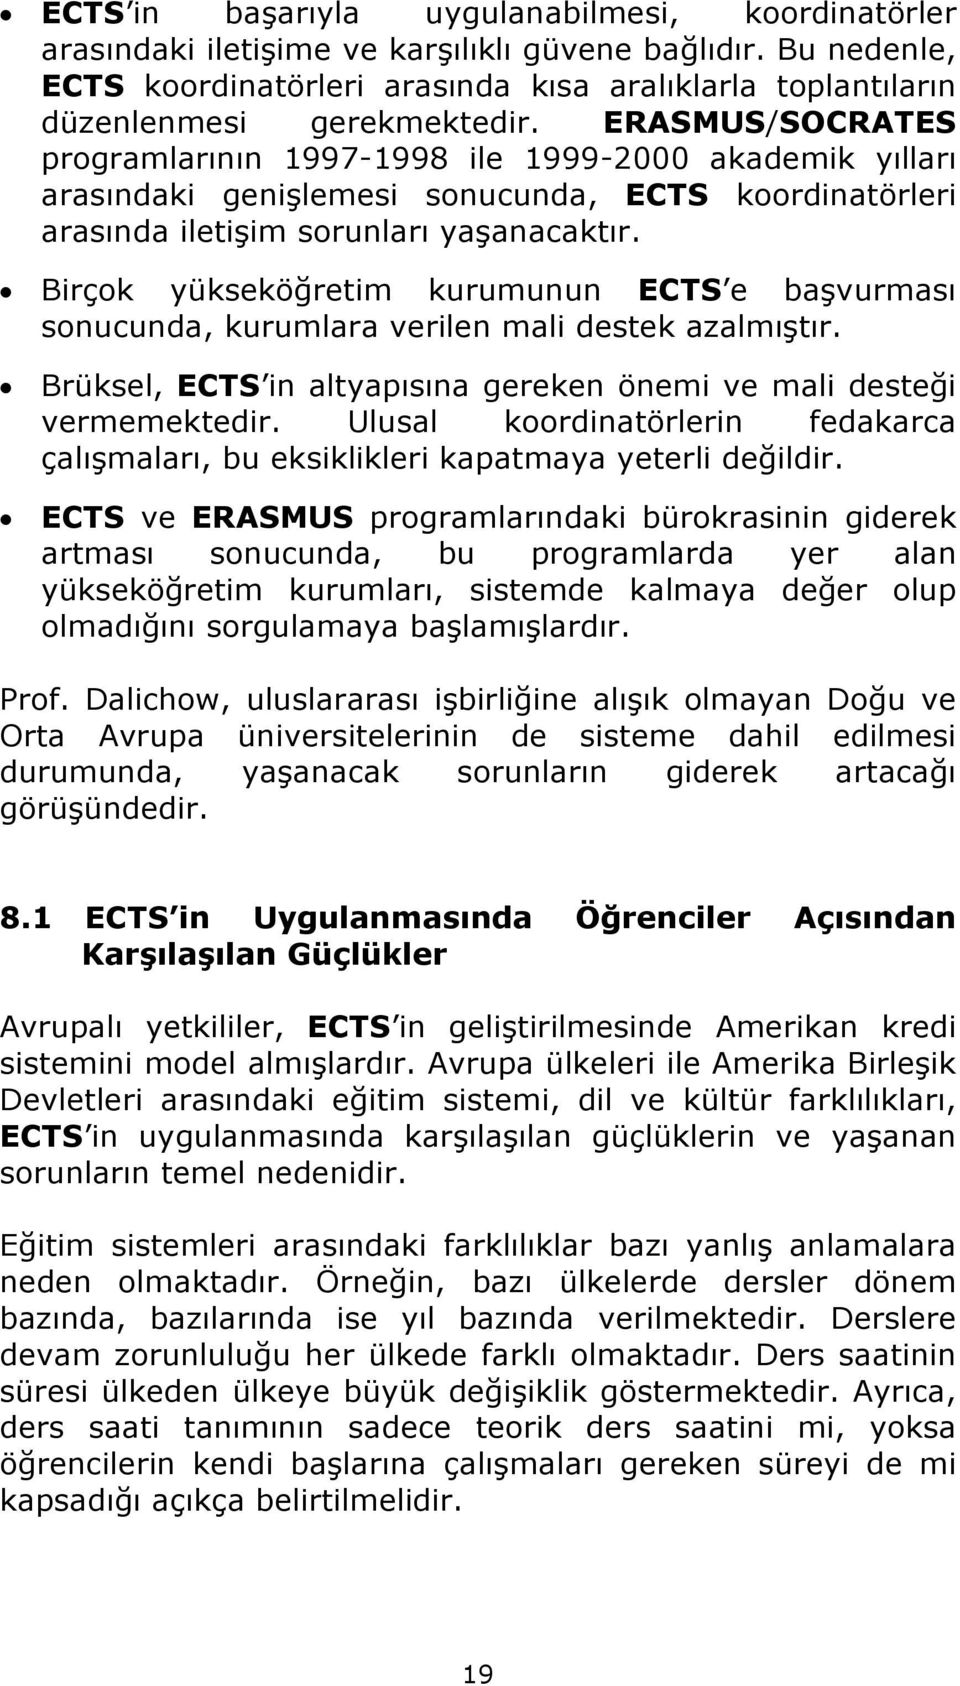 ERASMUS/SOCRATES programlarının 1997-1998 ile 1999-2000 akademik yılları arasındaki genişlemesi sonucunda, ECTS koordinatörleri arasında iletişim sorunları yaşanacaktır.